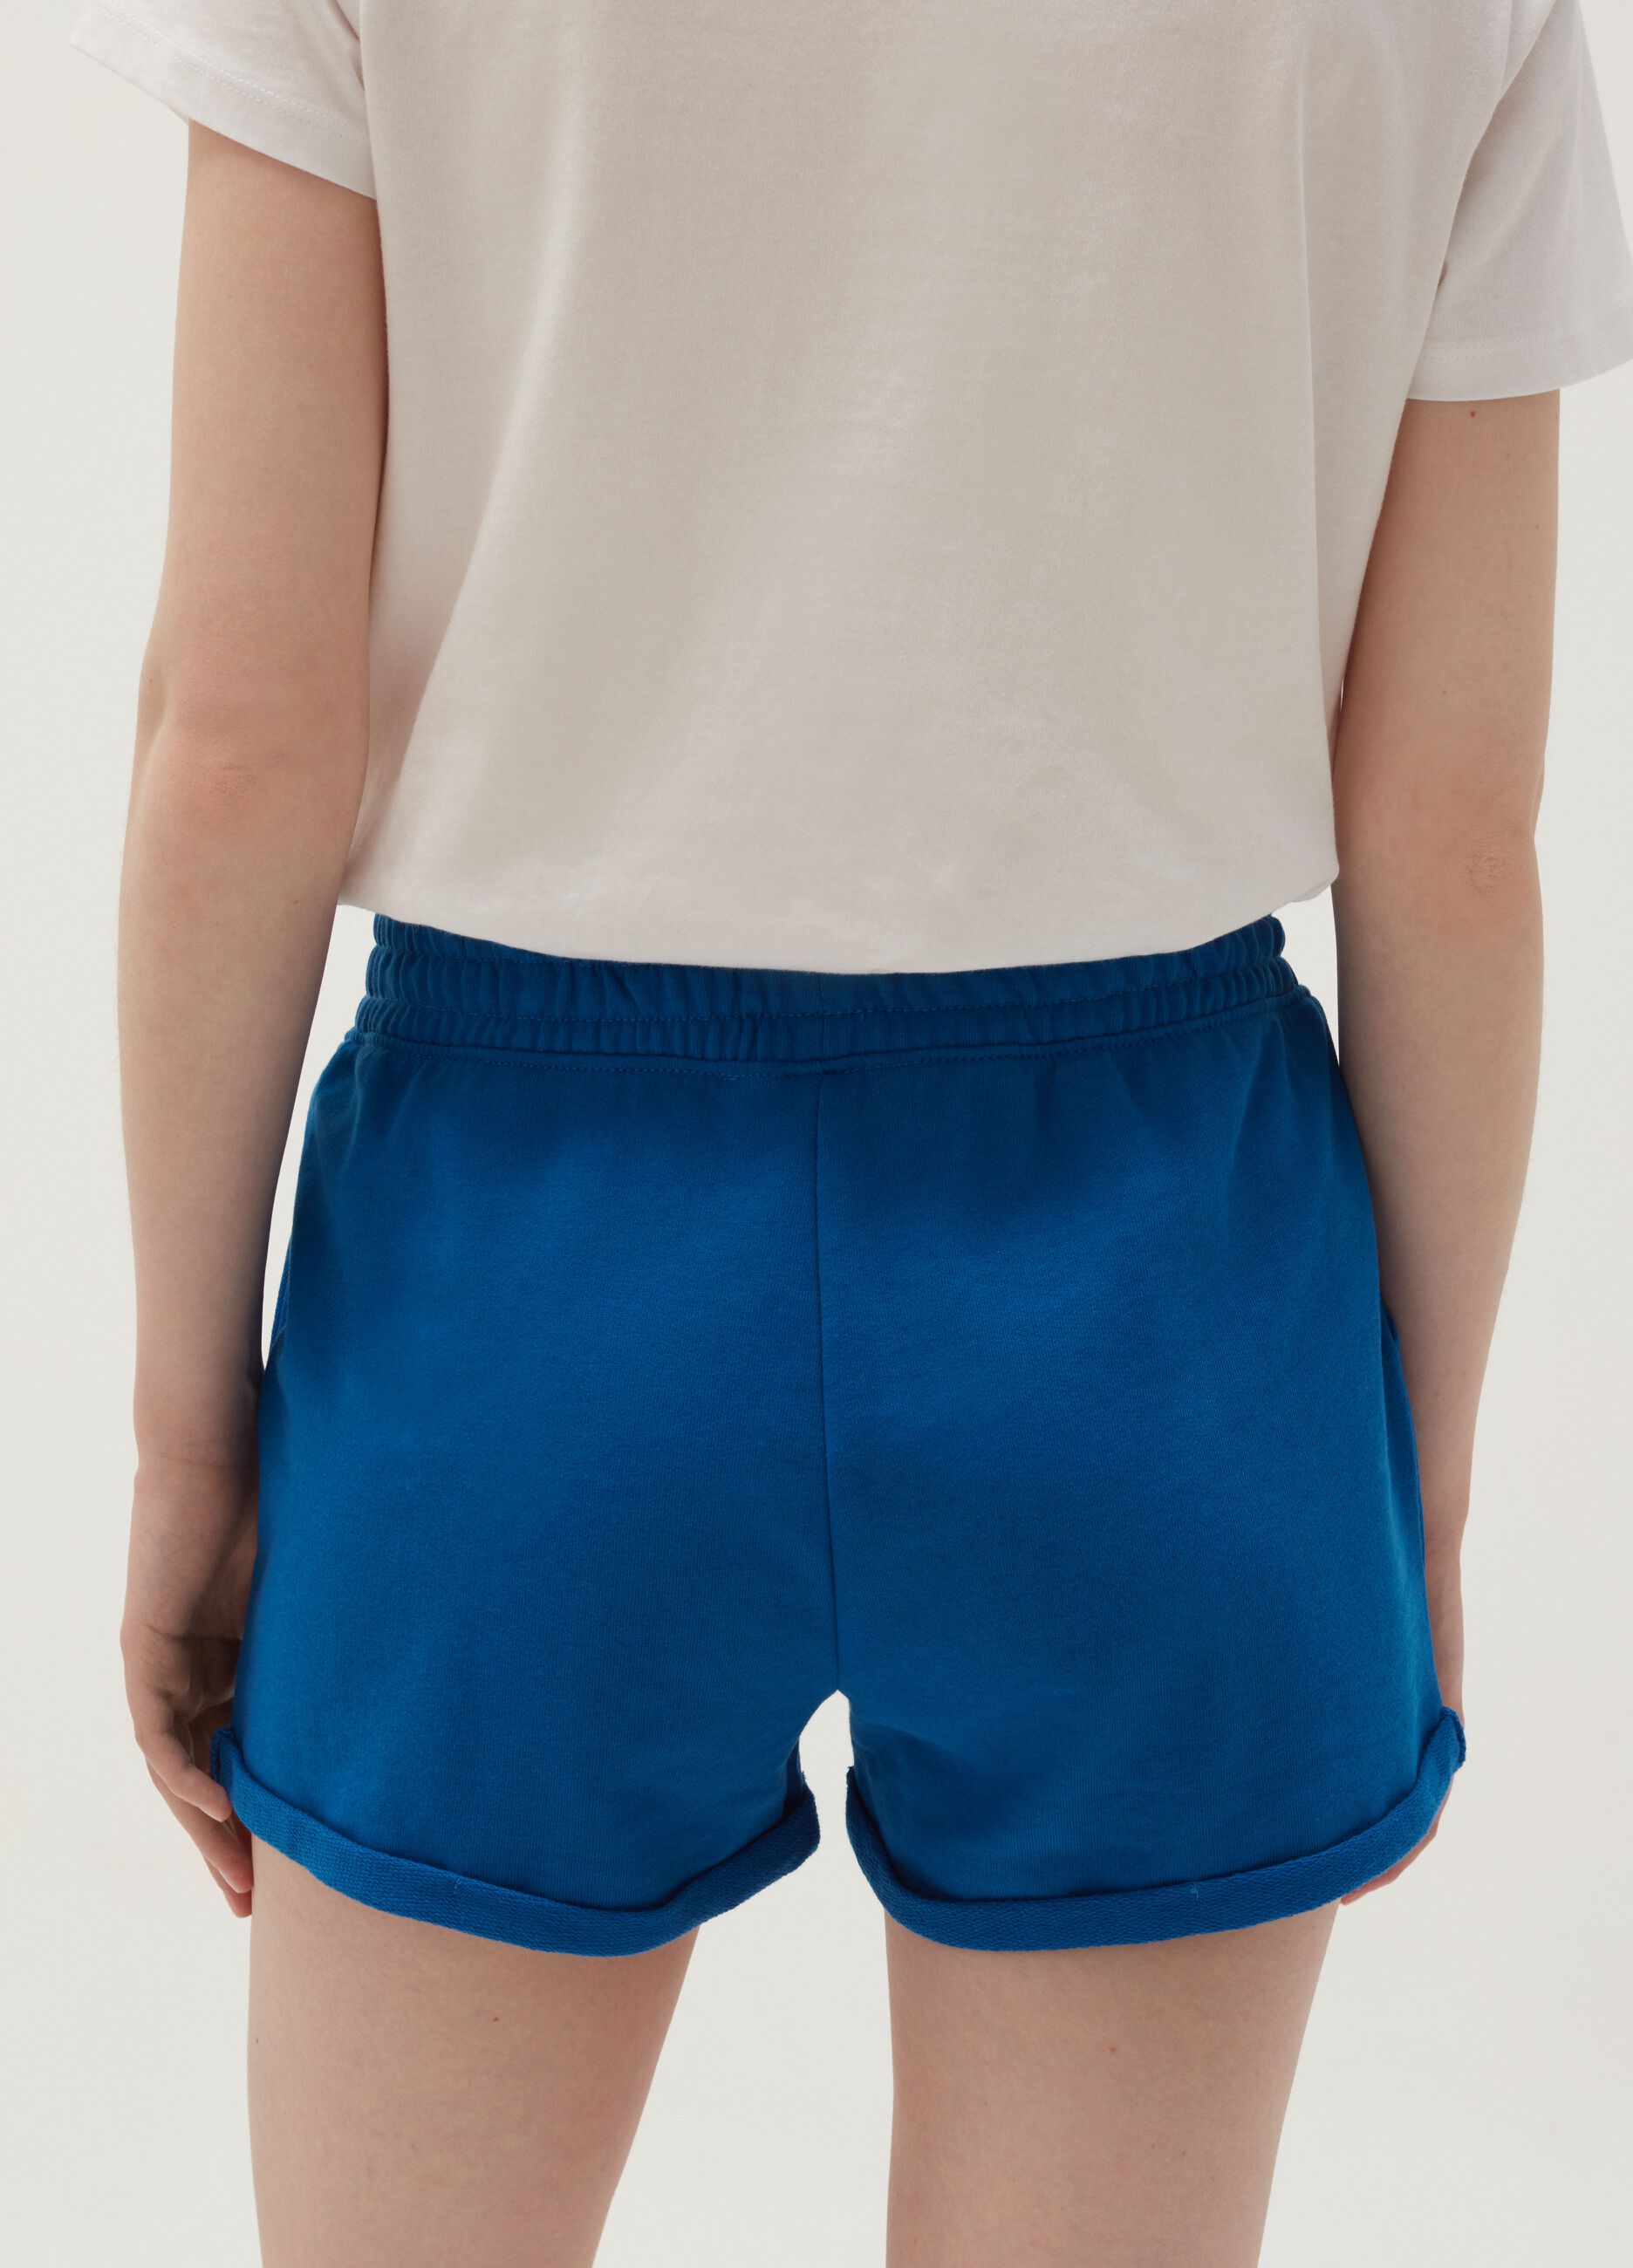 Plush shorts with turned up hems